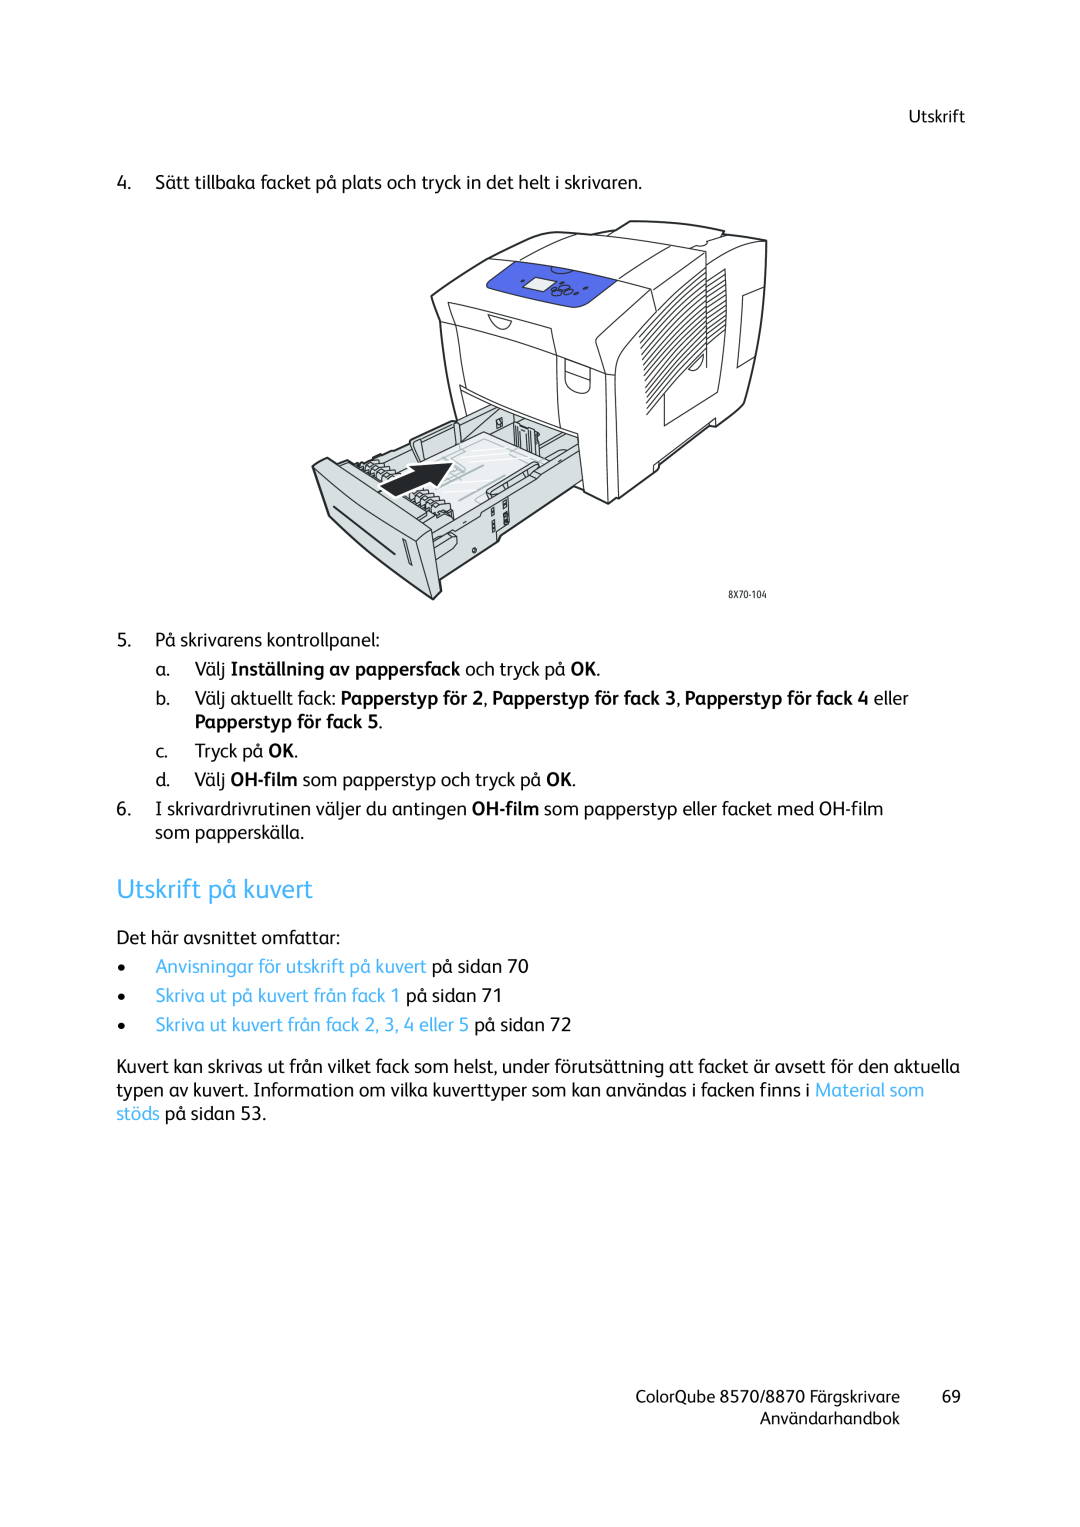 Xerox 8570 / 8870 manual Utskrift på kuvert, Anvisningar för utskrift på kuvert på sidan 